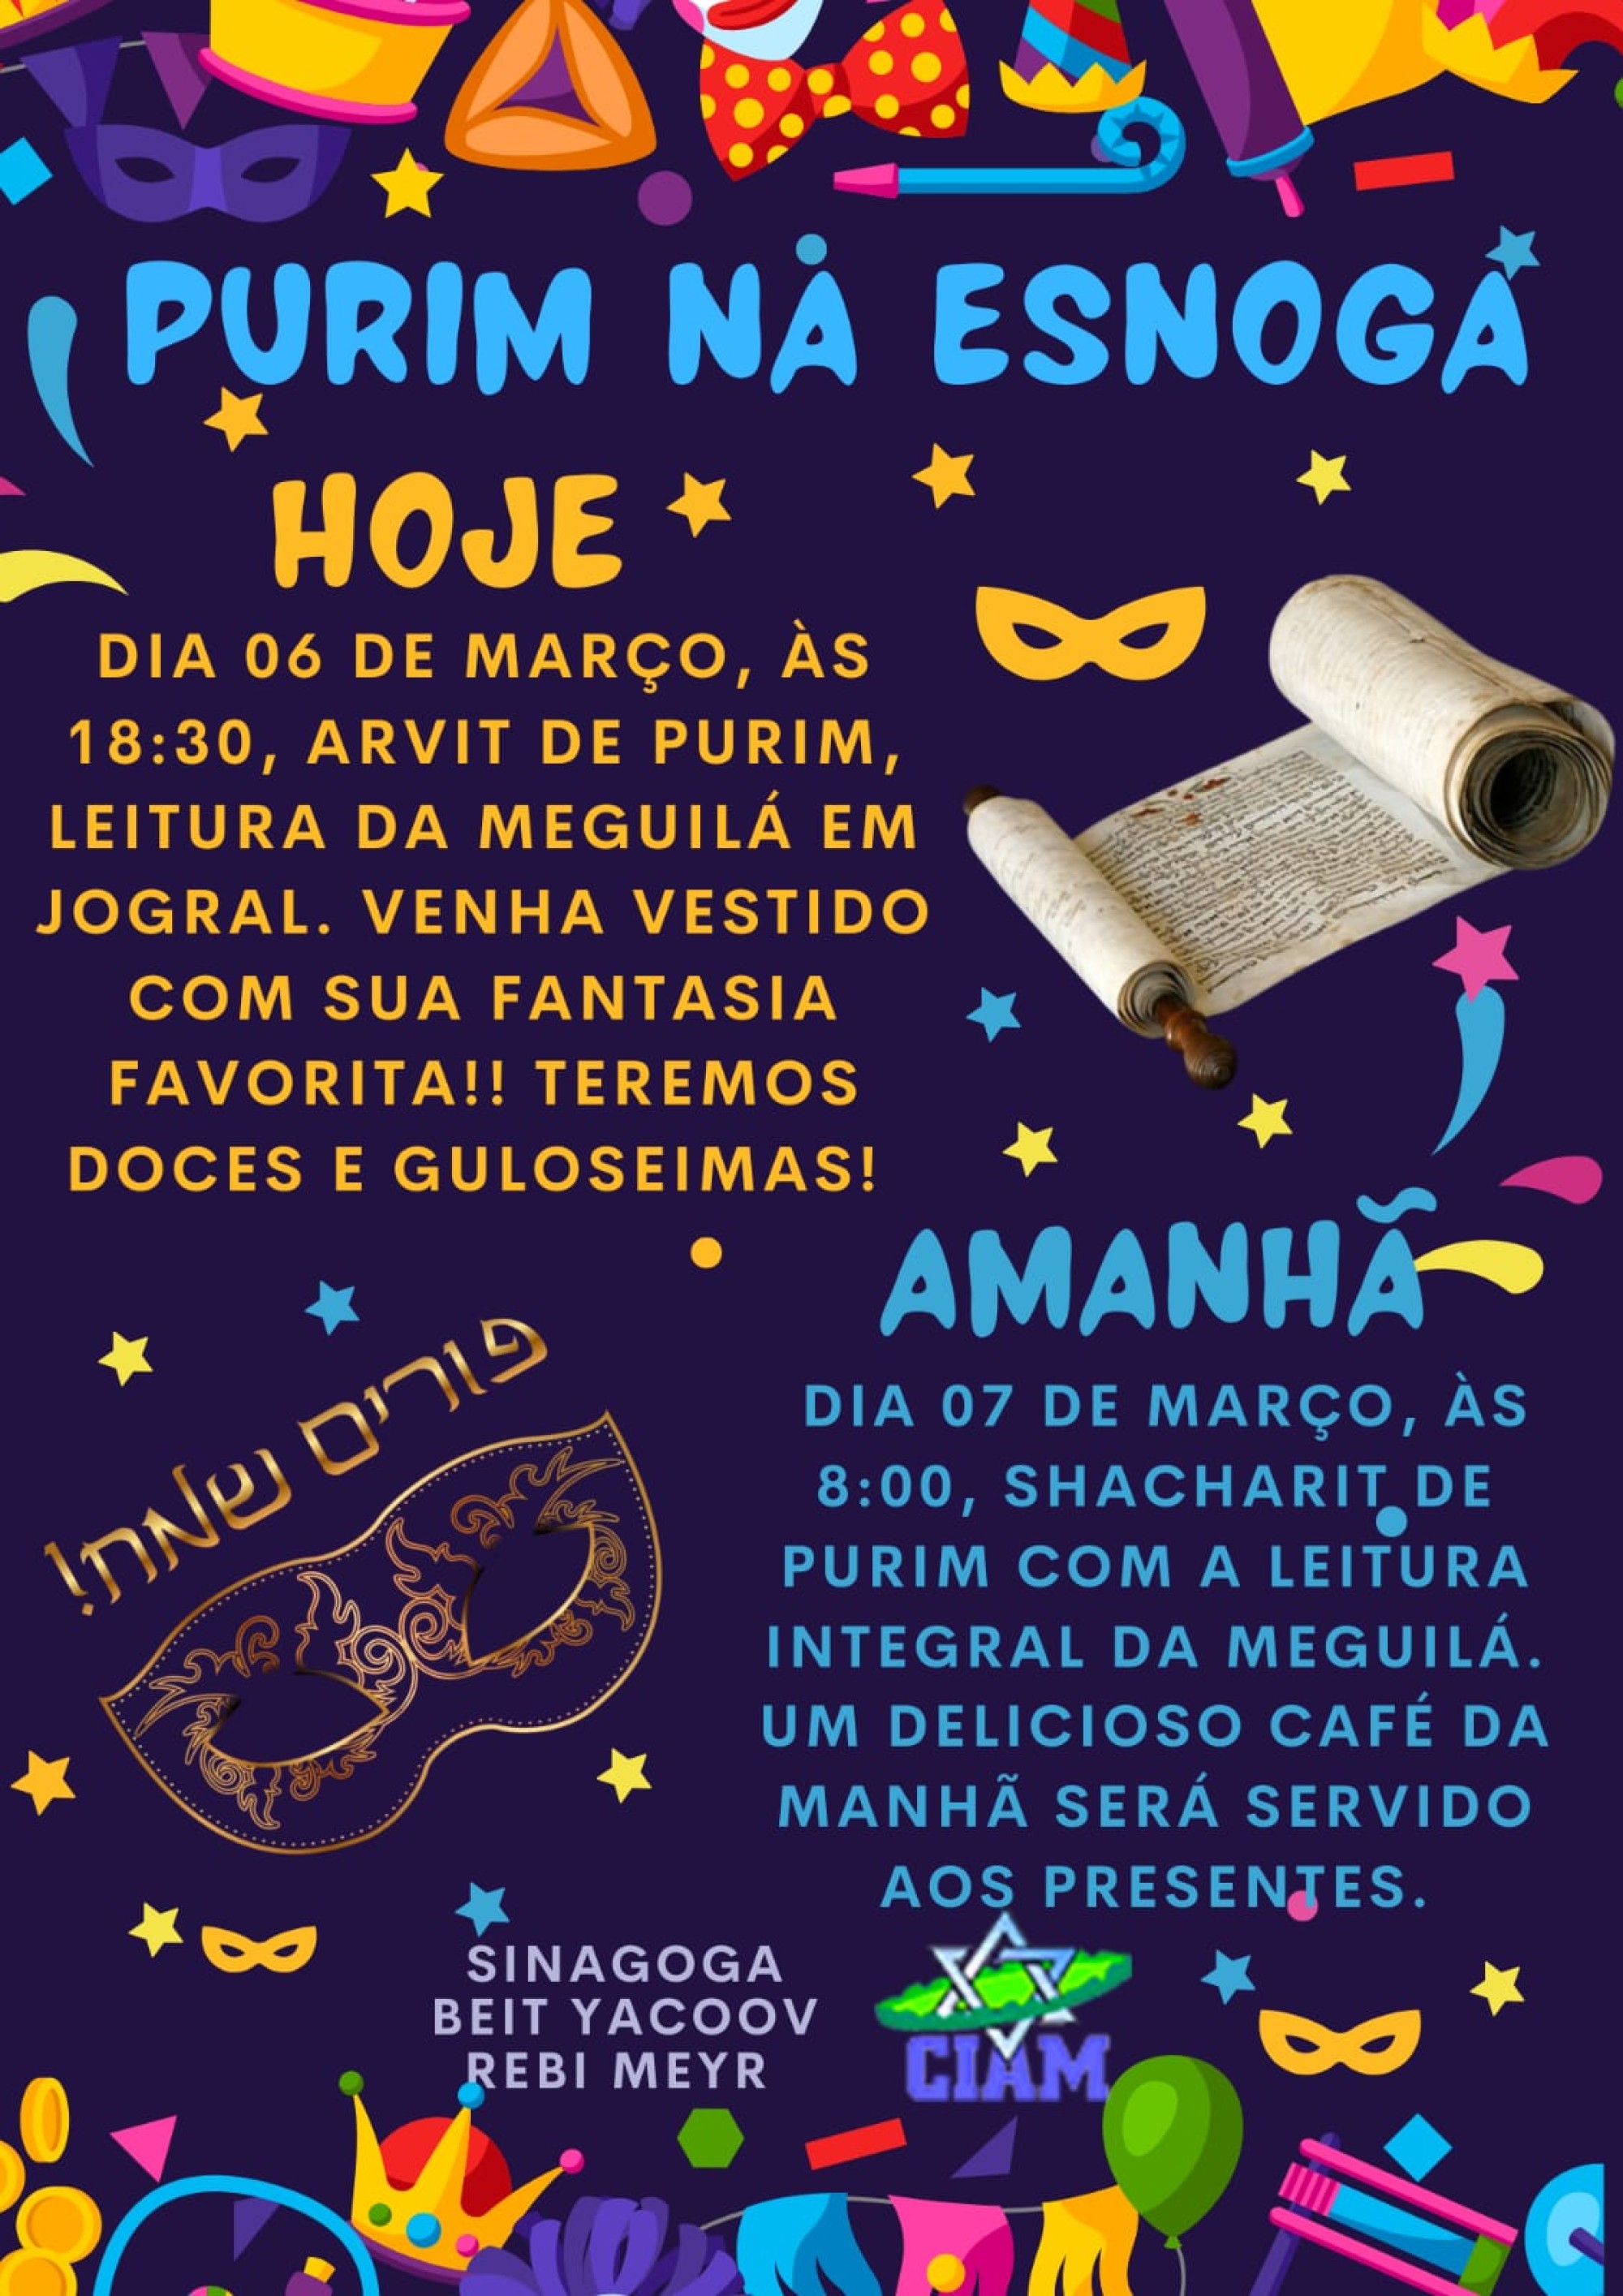 Federadas reúnem adultos e crianças para celebrar a Festa de Purim - Fundada em 1948, a CONIB – Confederação Israelita do Brasil é o órgão de representação e coordenação política da comunidade judaica brasileira. 